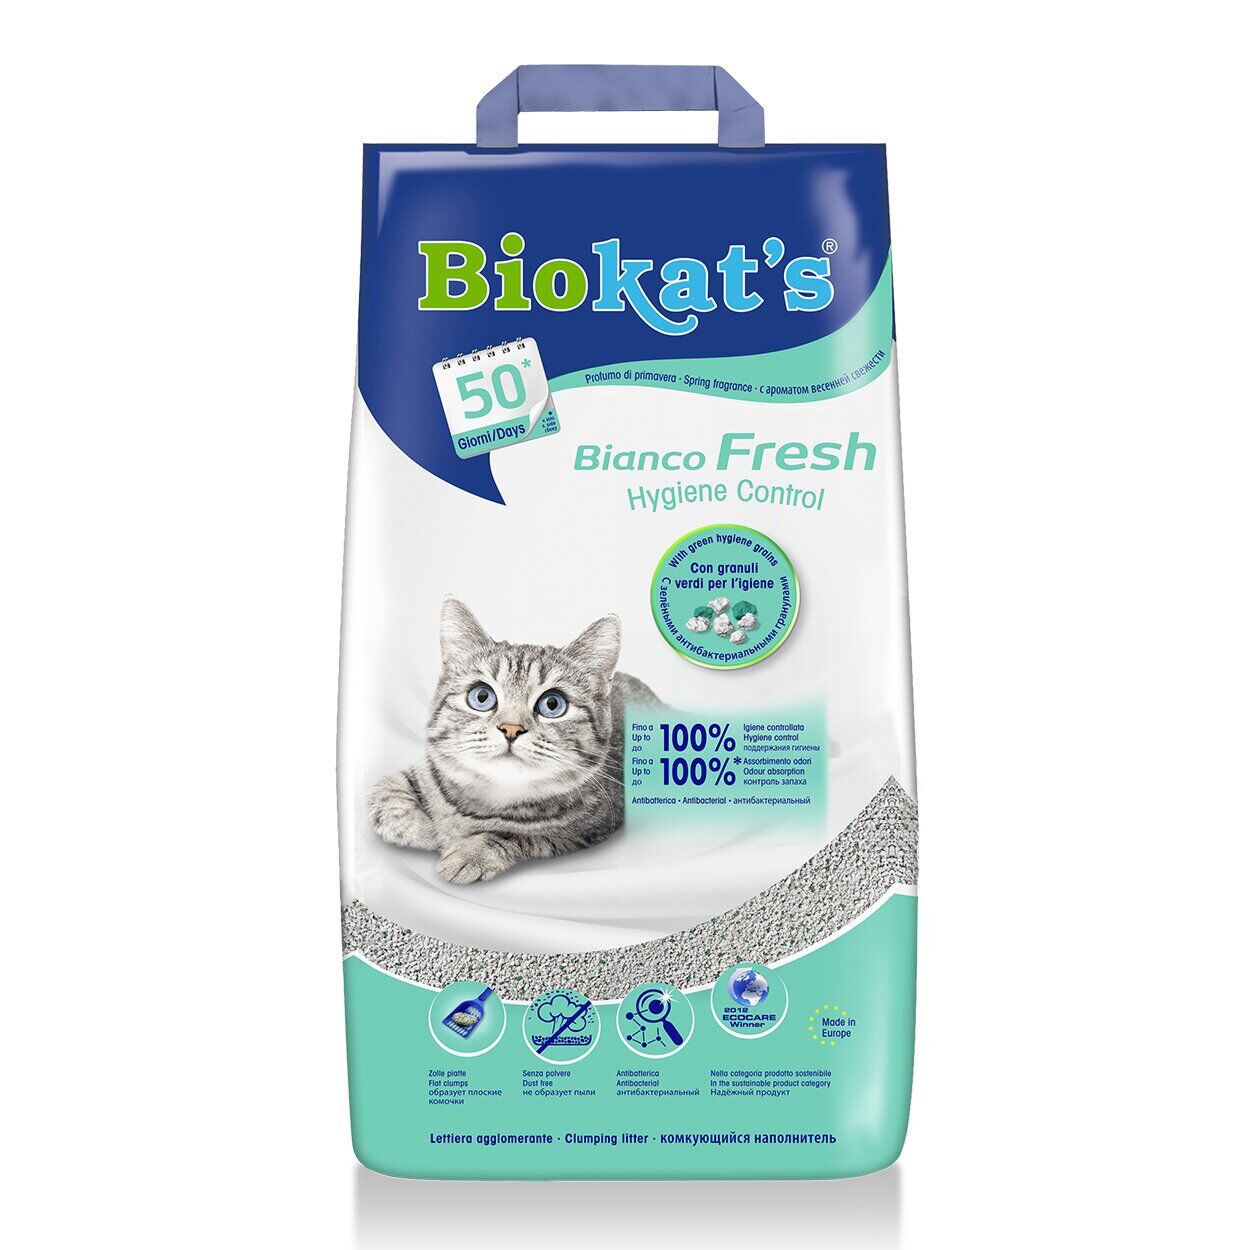 Наполнитель бентонитовый Biokats Bianco Fresh 5 кг